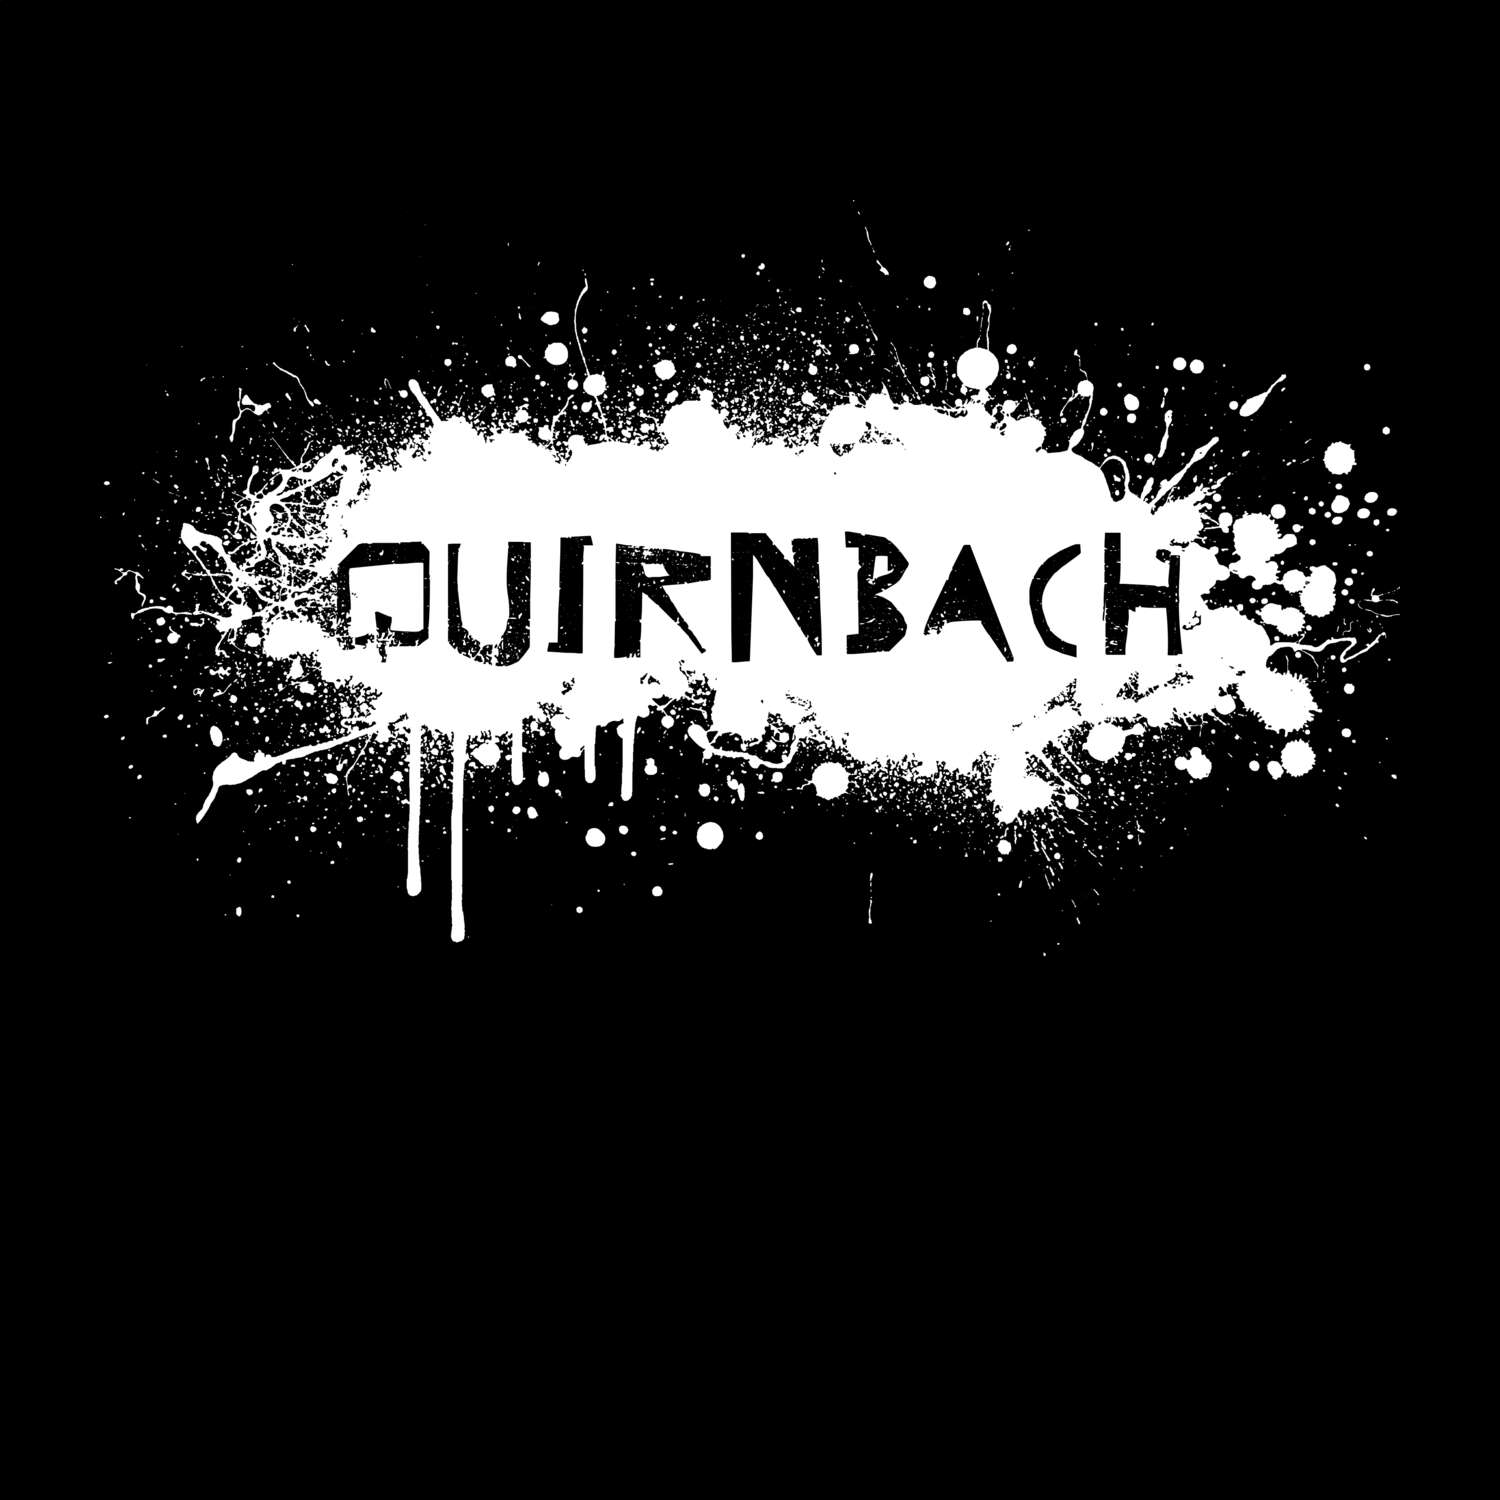 Quirnbach T-Shirt »Paint Splash Punk«